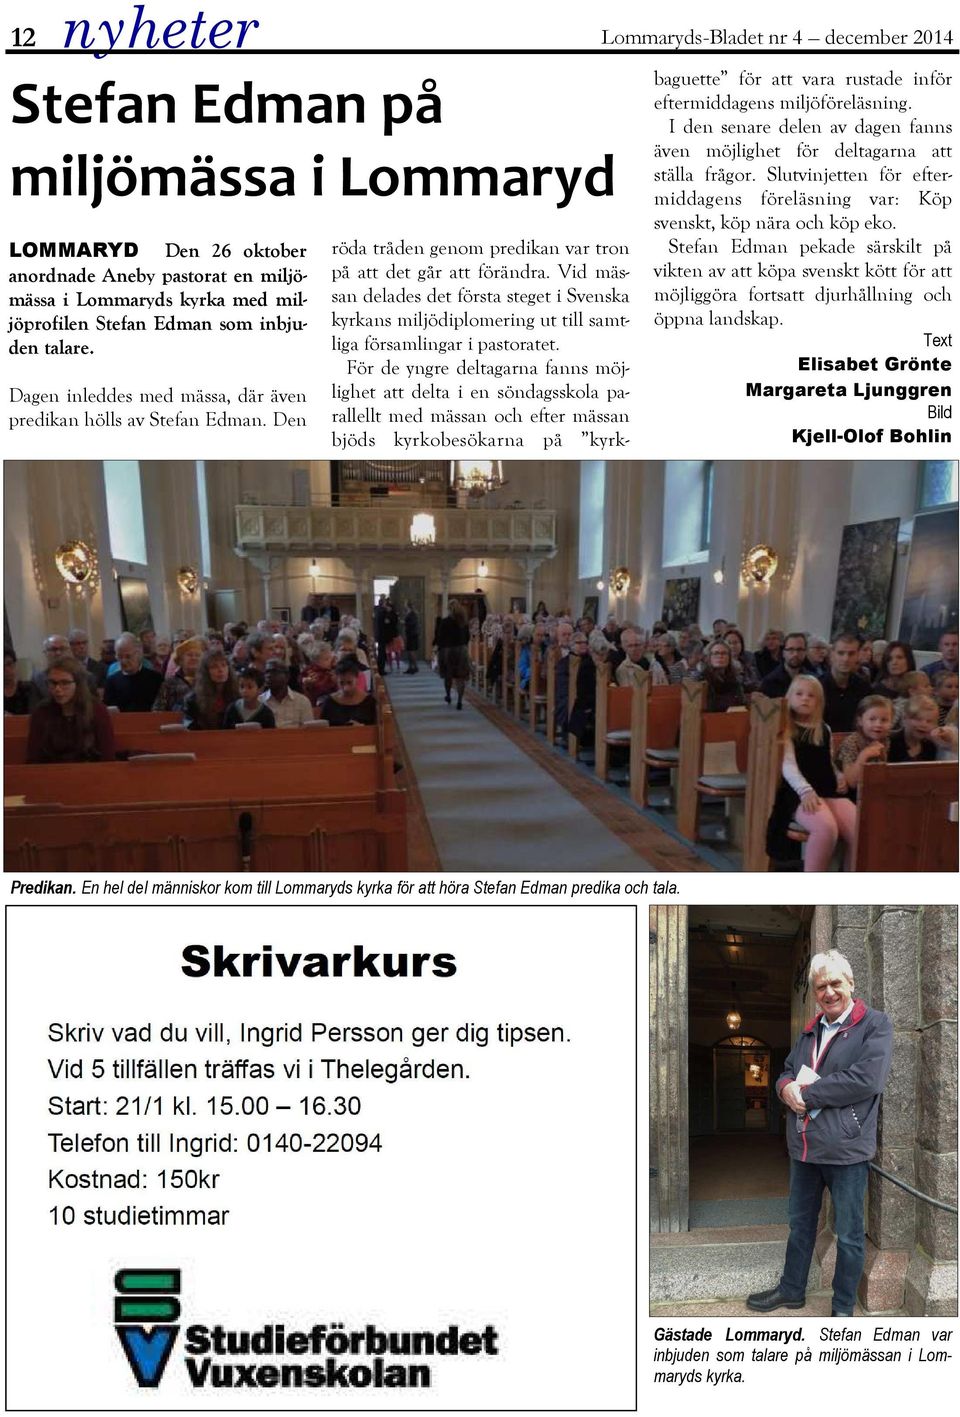 Vid mässan delades det första steget i Svenska kyrkans miljödiplomering ut till samtliga församlingar i pastoratet.